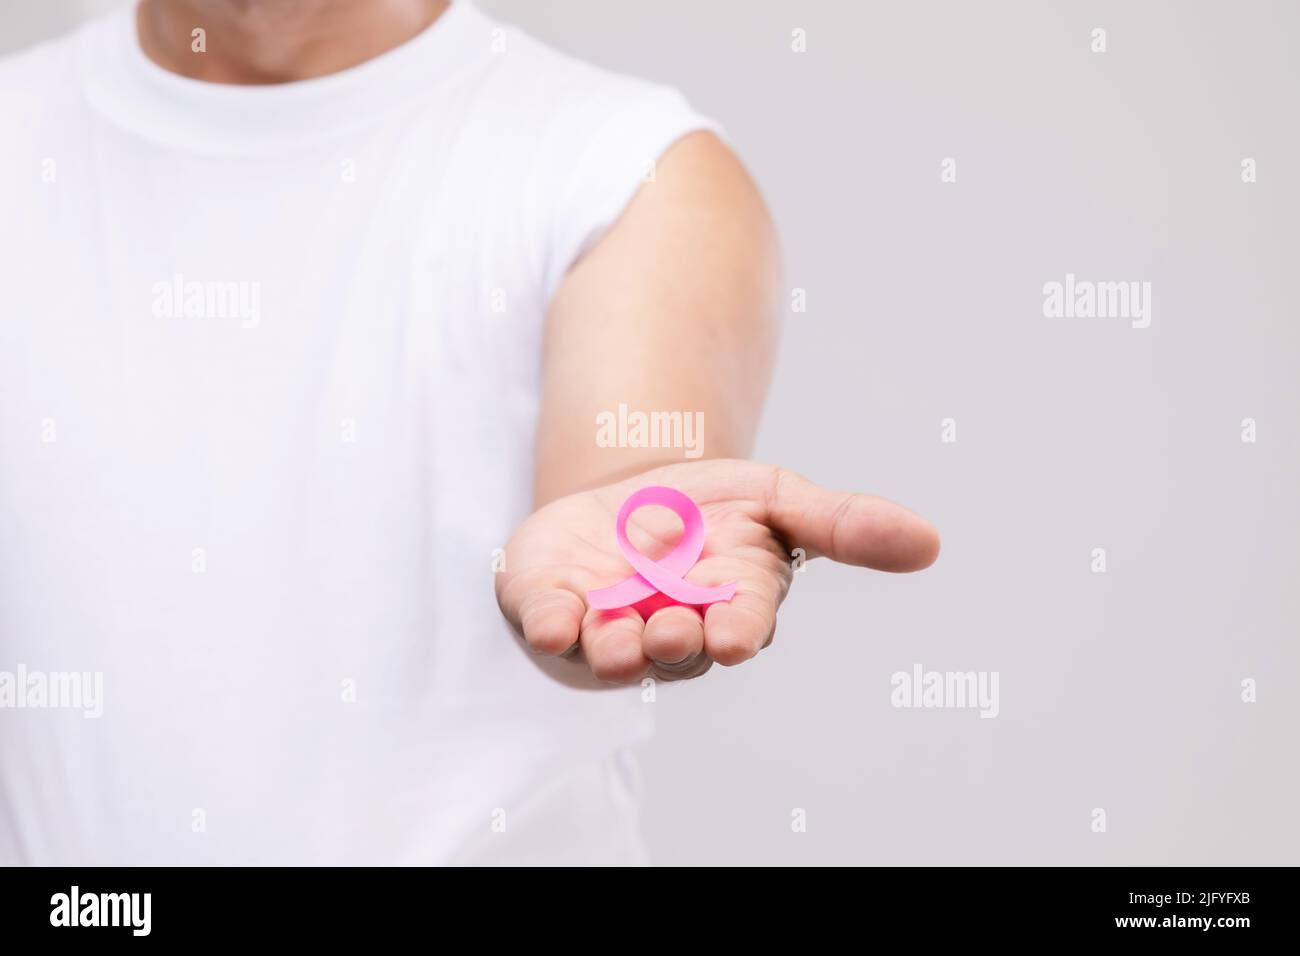 Brustkrebs bei Männern Konzept : Portrait asiatischer Mann und rosa Band das Symbol der Brustkrebs-Kampagne. Studioaufnahme isoliert auf grauem Hintergrund Stockfoto